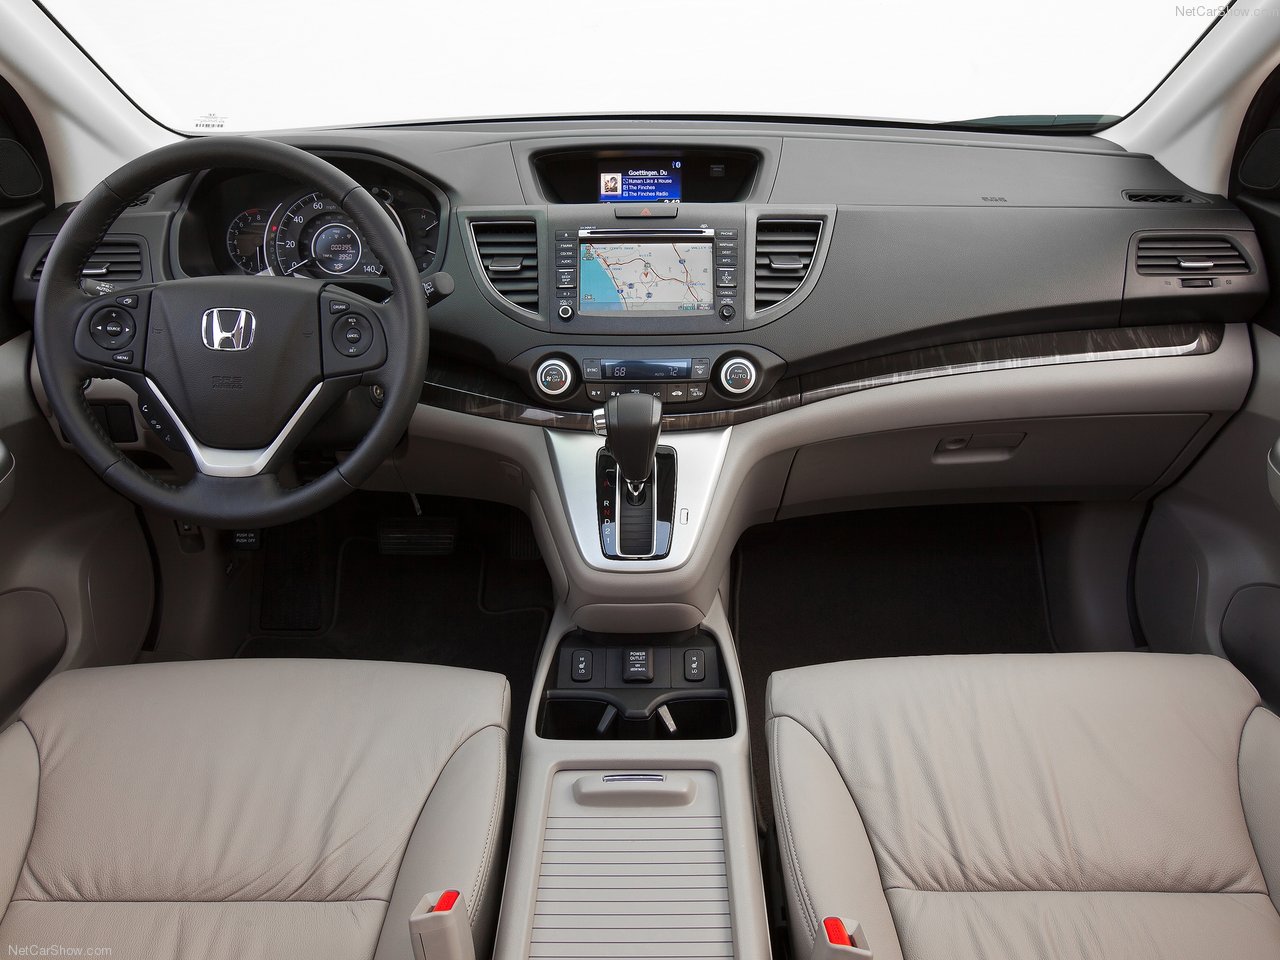 Honda CRV cũ đánh giá chất lượng bảng giá bán 062023